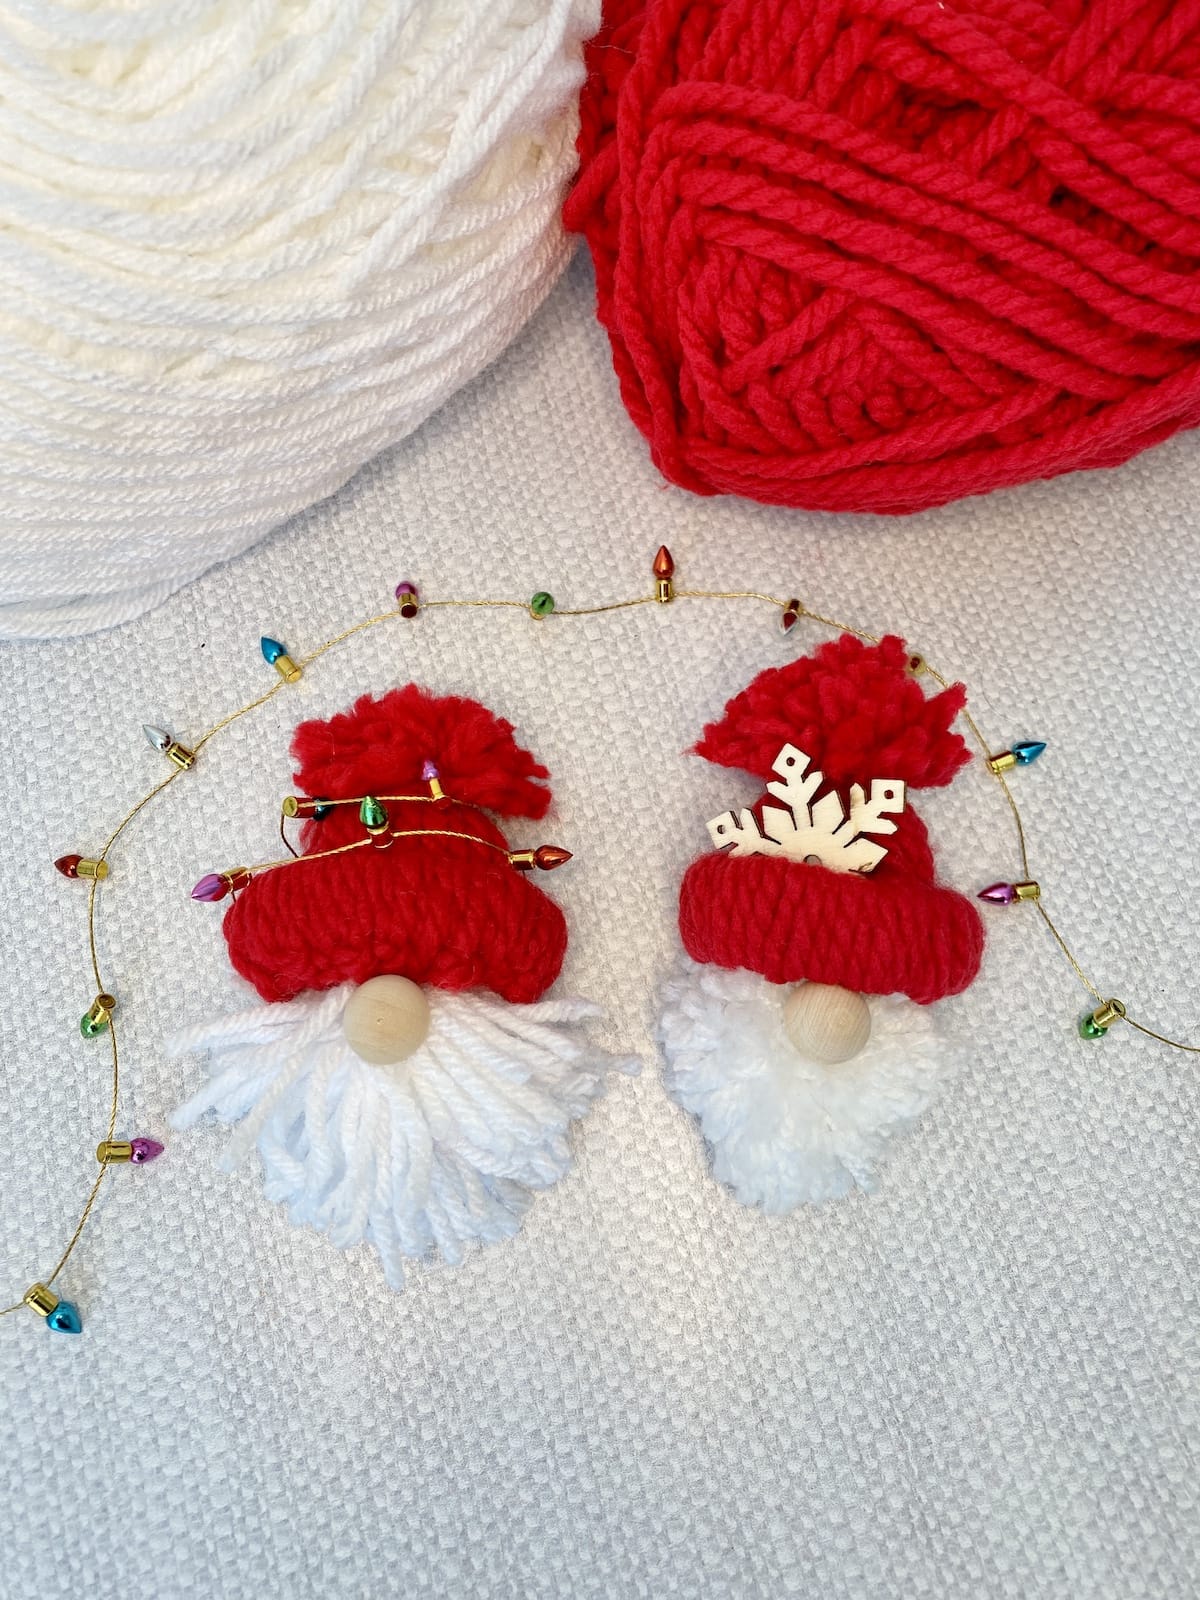 DIY Yarn Ornaments